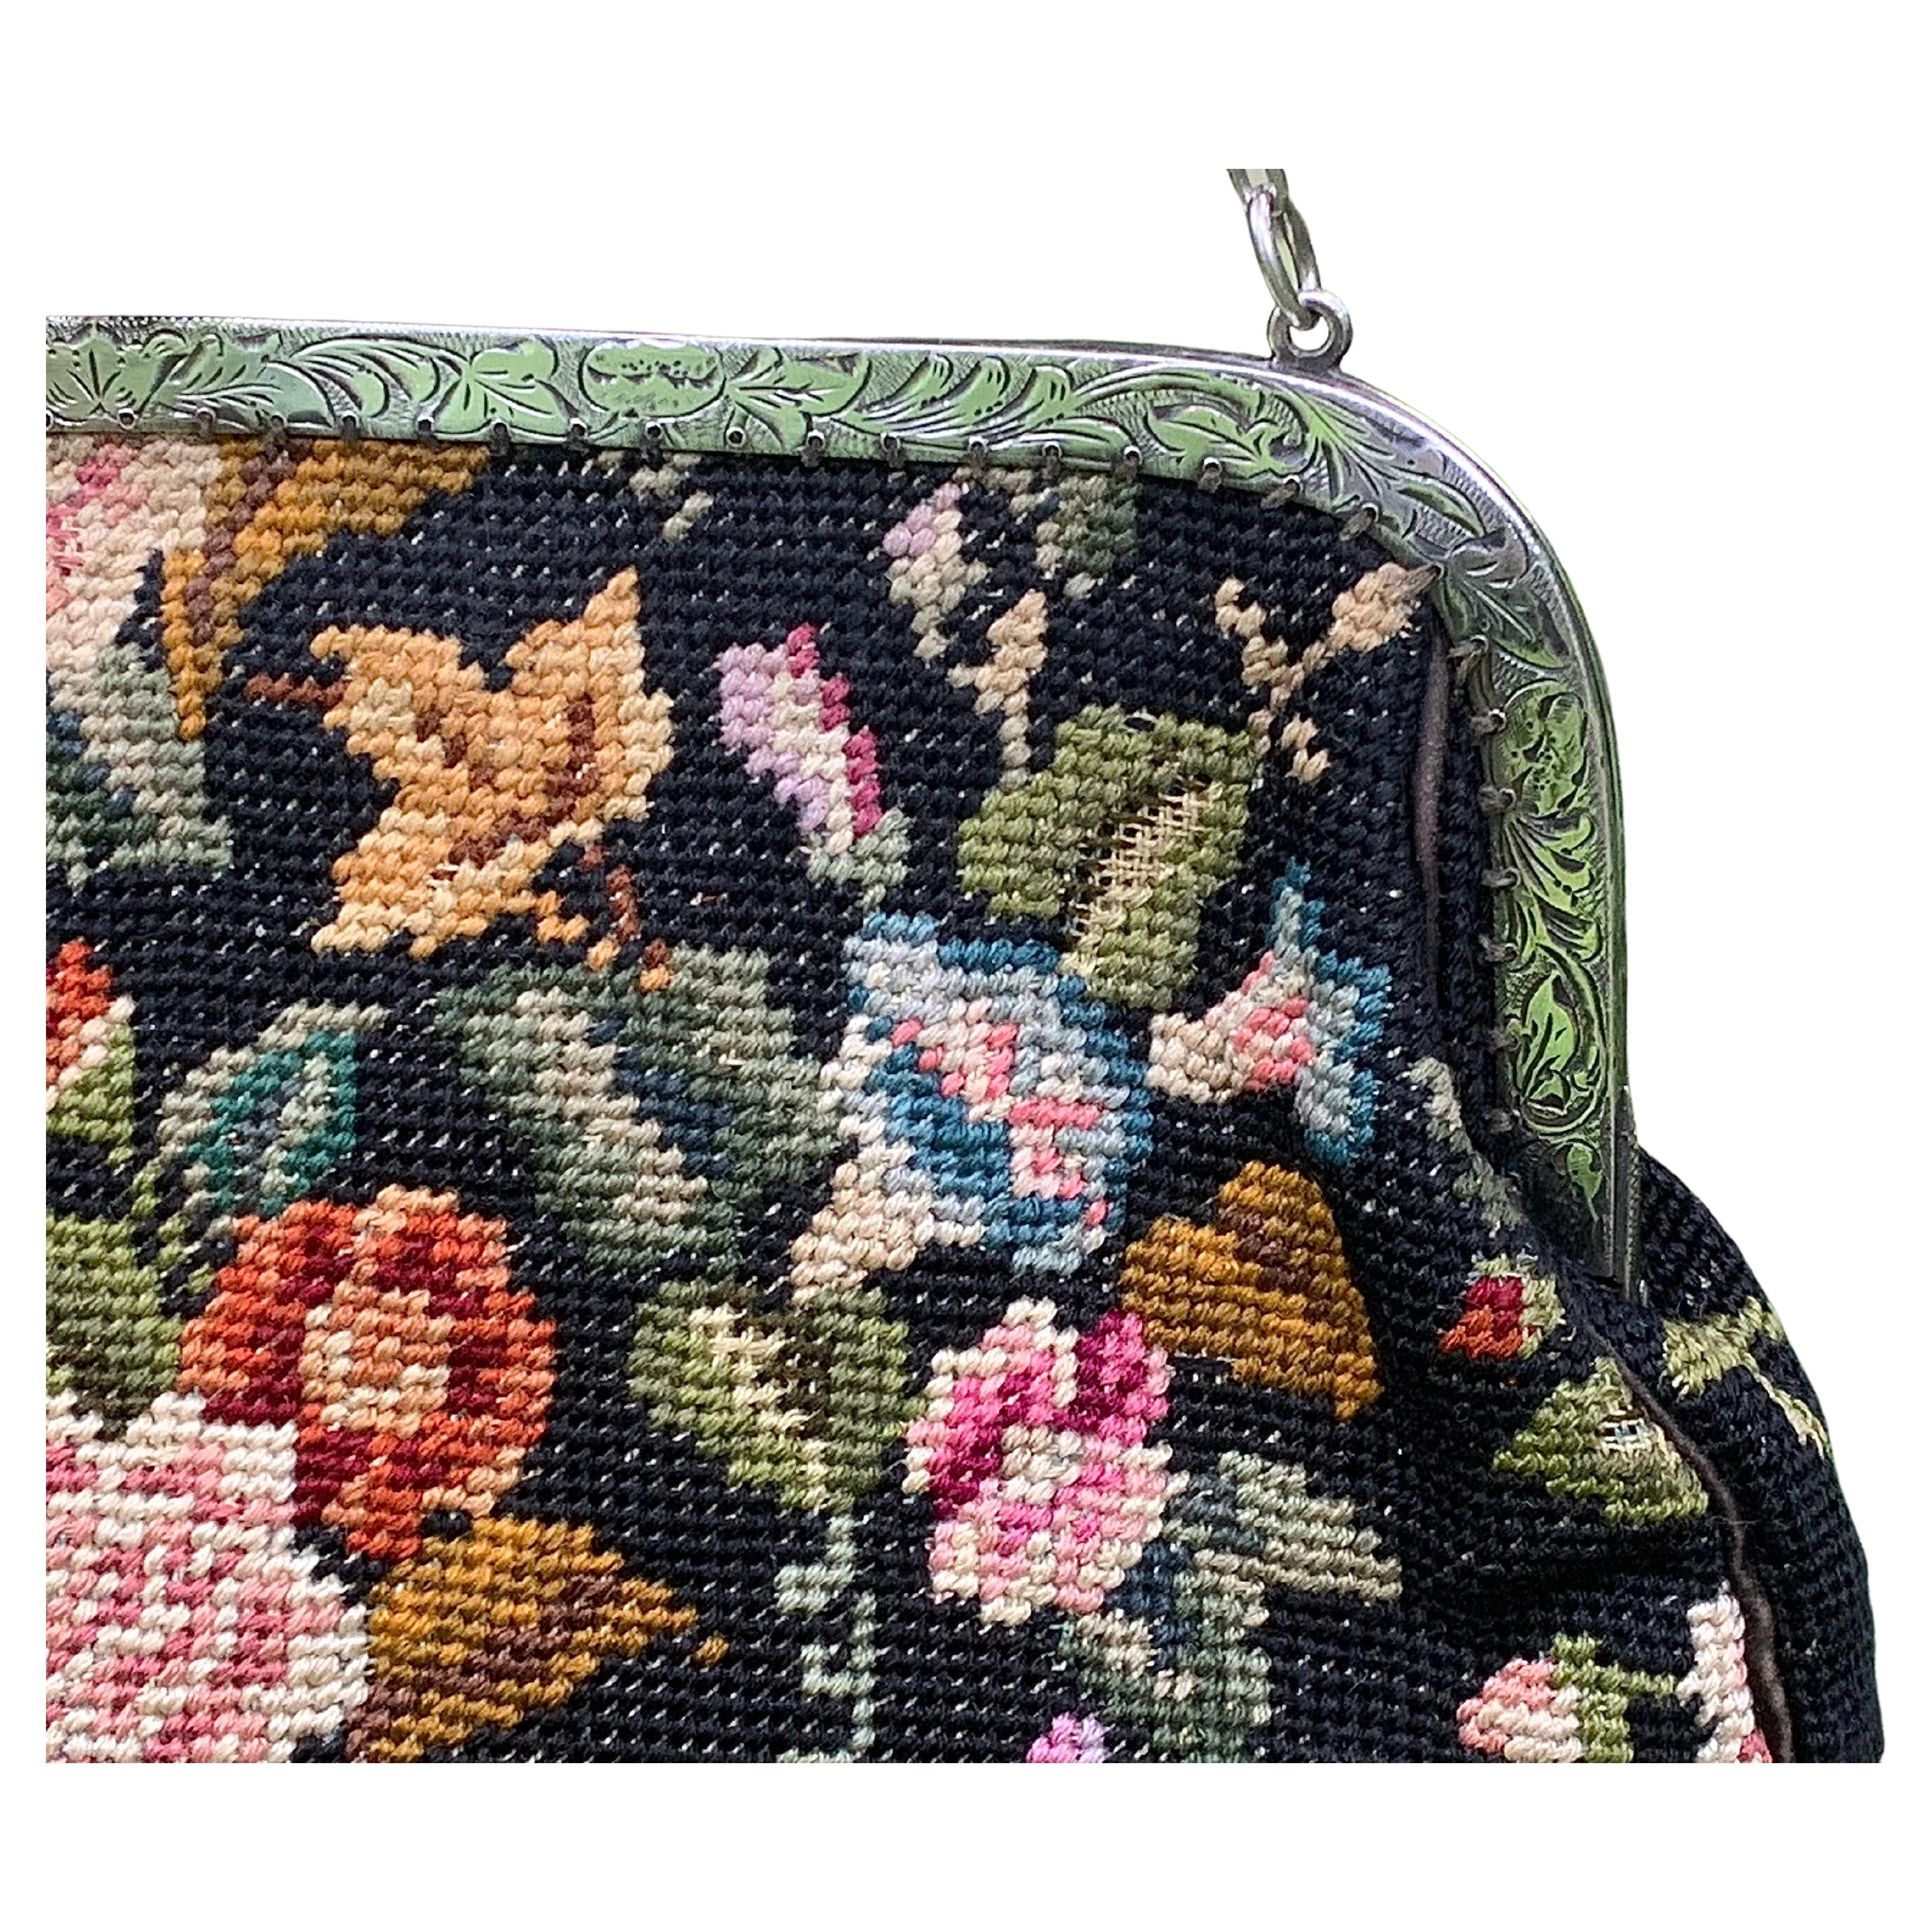 Diese hochelegante Art-Déco-Handtasche verbindet die Handwerkskunst eines Meisterjuweliers mit präziser Handarbeit. Die Tasche kann über der Schulter oder als Clutch getragen werden. Der silberne Rahmen ist fein graviert und wird durch einen